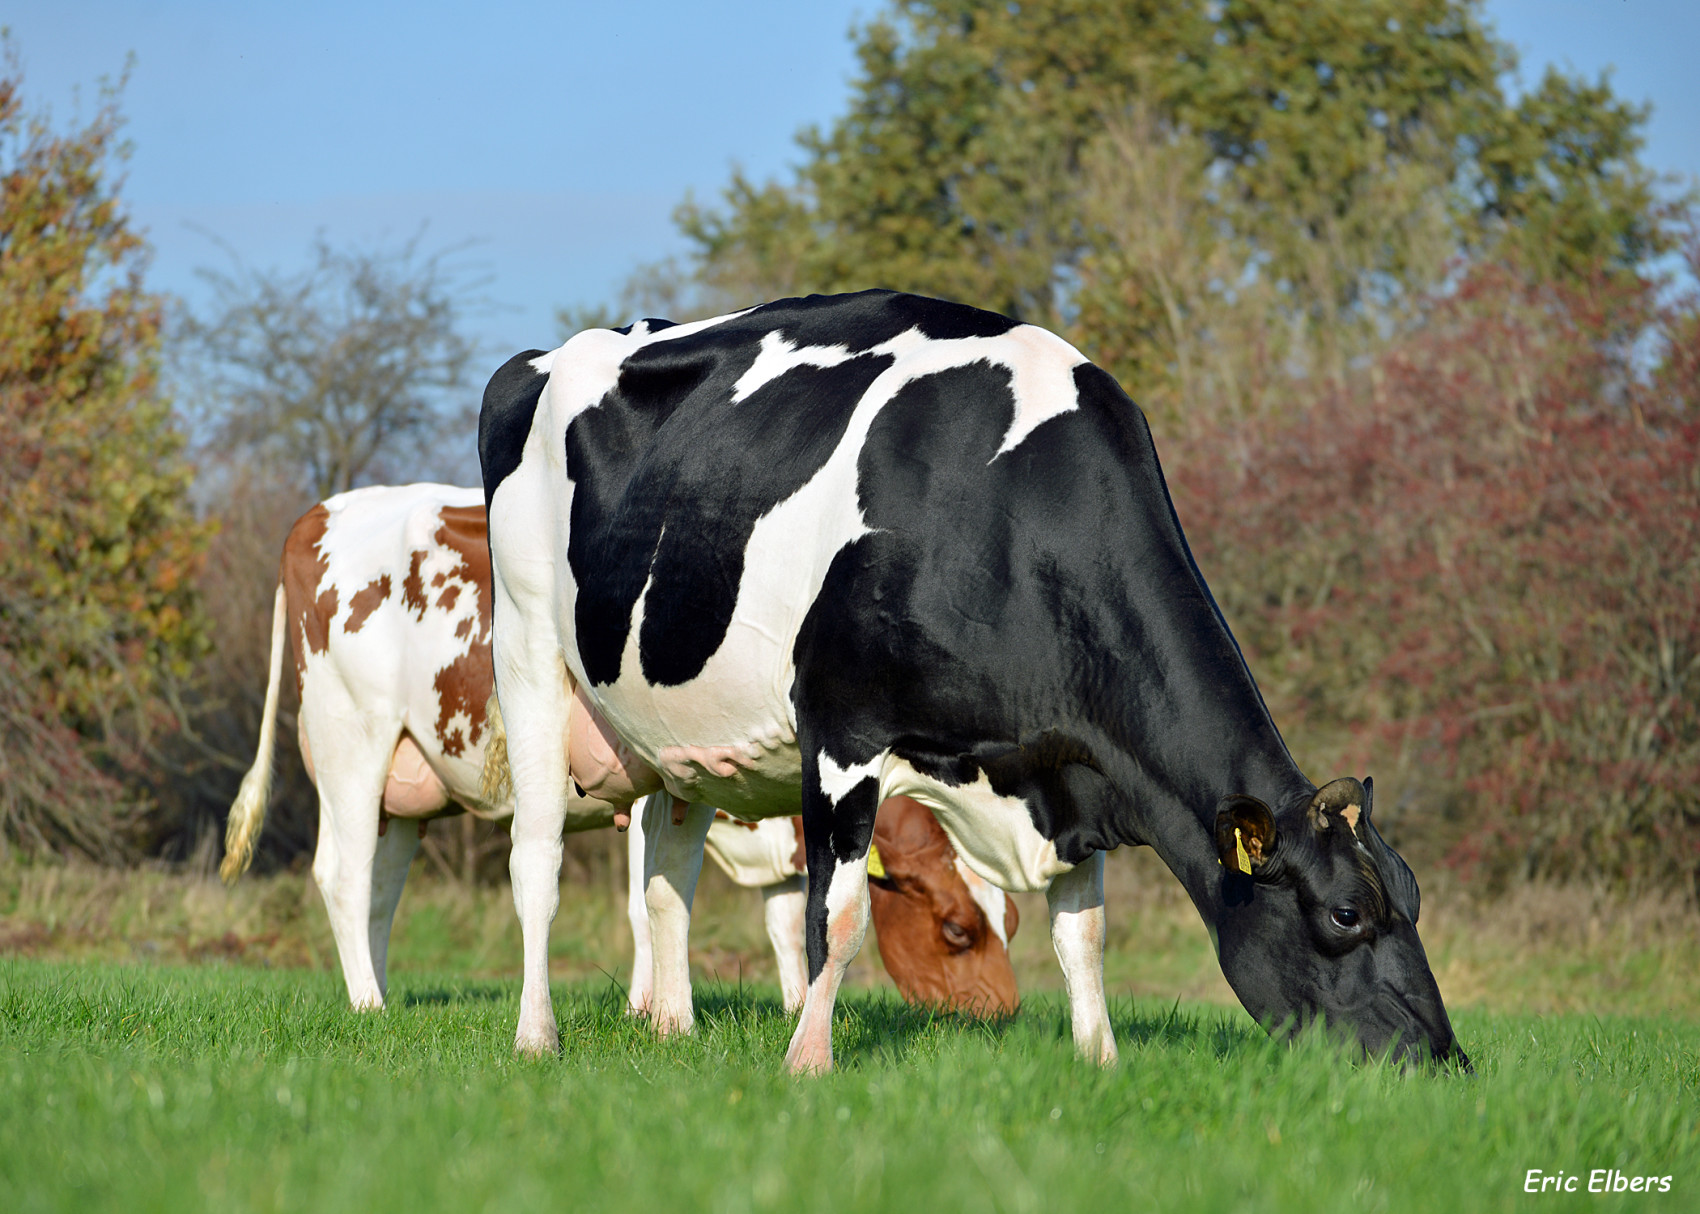 Levensproductie Vlaamse koeien stijgt tot boven de 30.000 kg melk